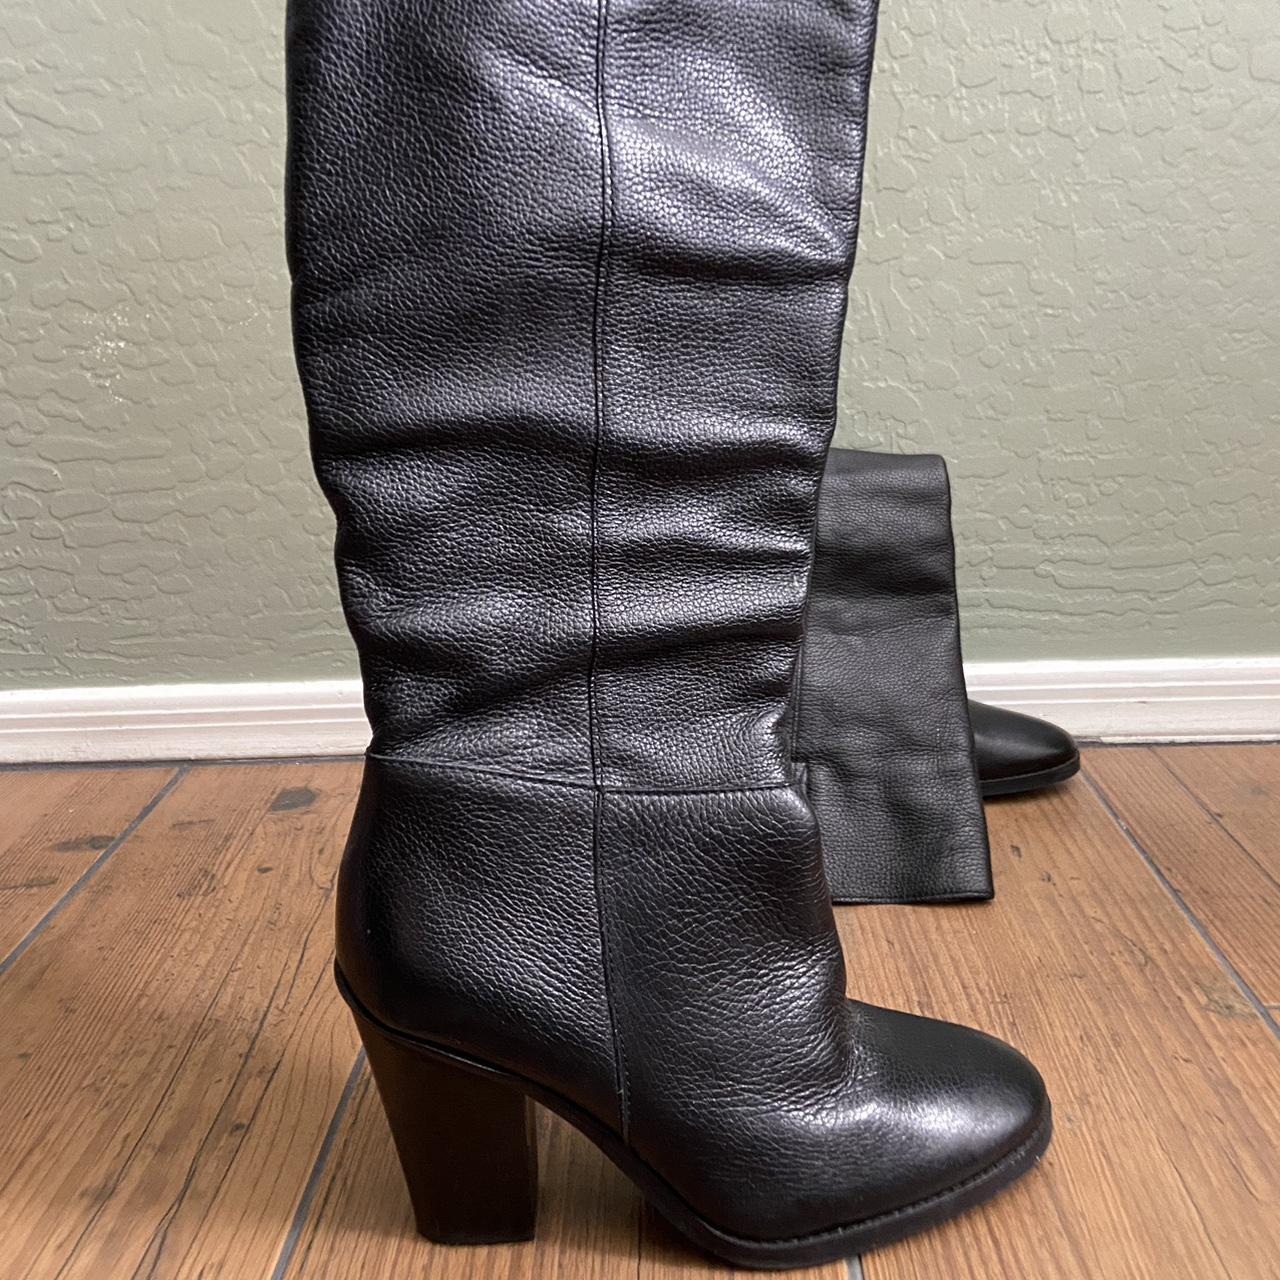 Matisse Raquel Black Leather Boots 4.5’’ heel Size... - Depop